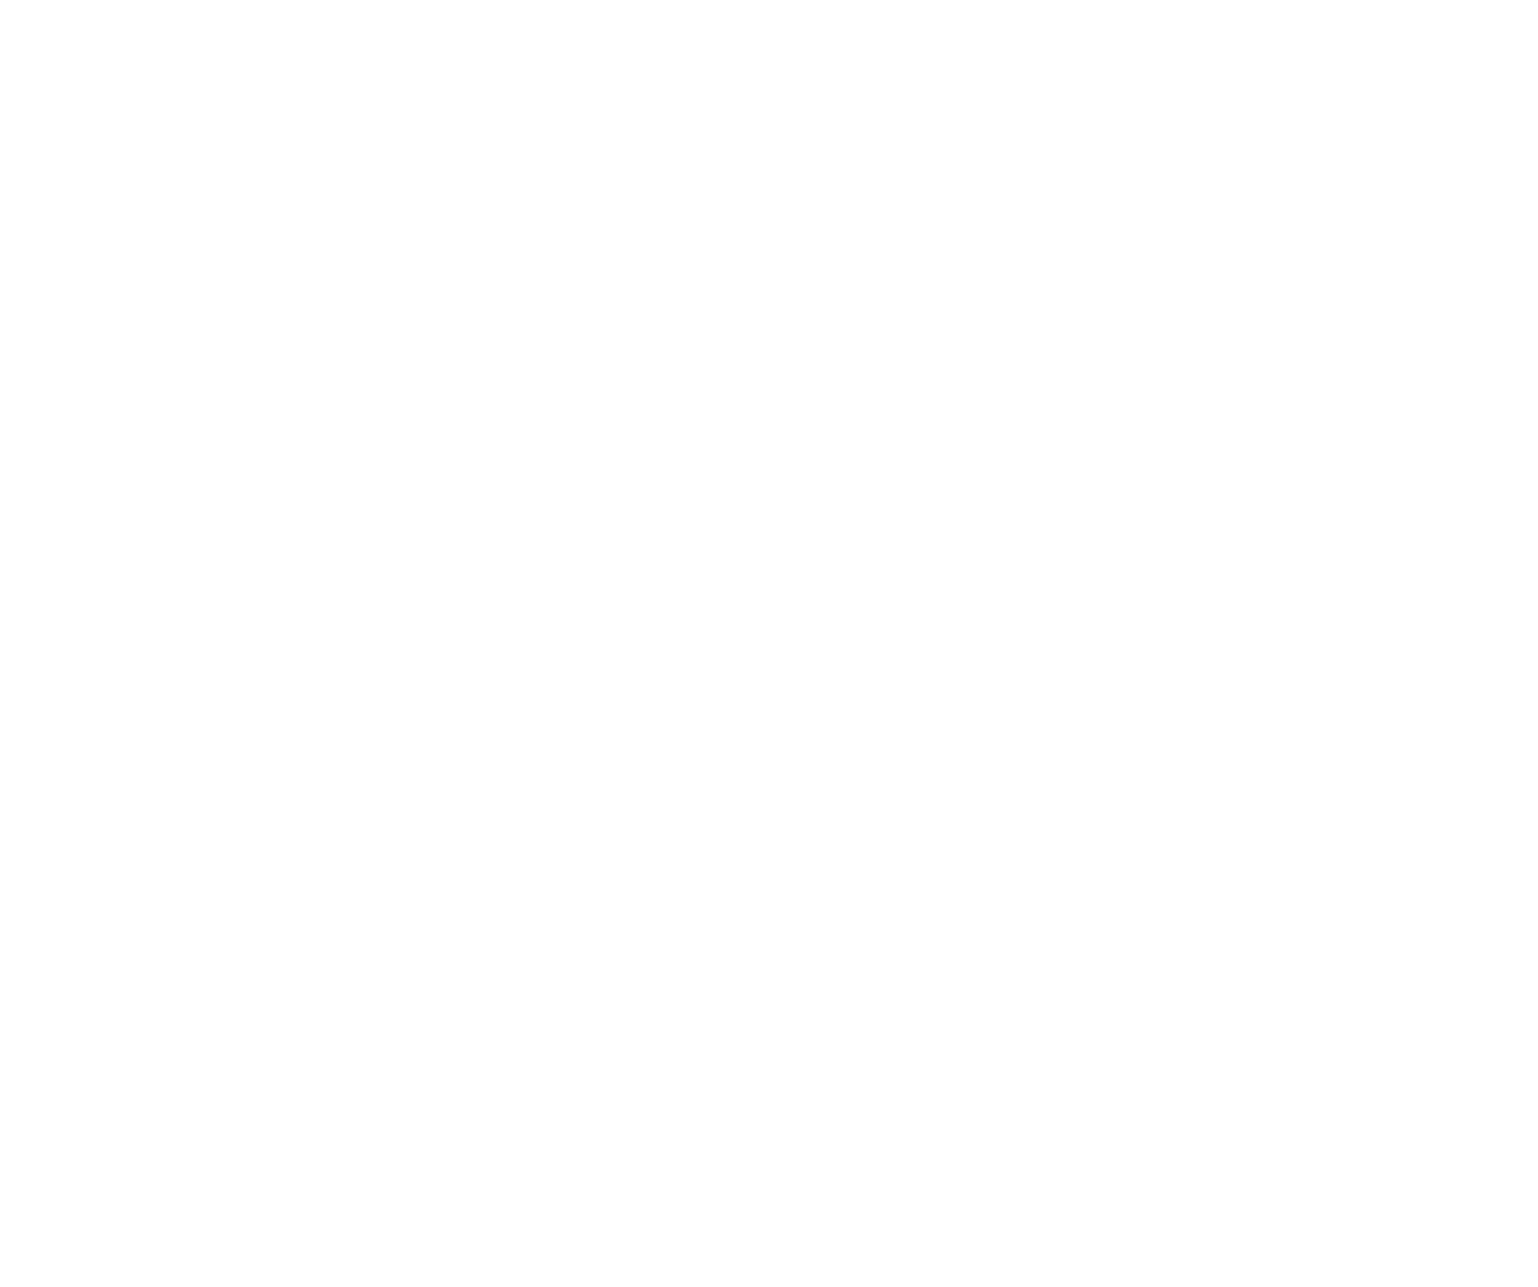 Nissan logo for dark backgrounds (transparent PNG)